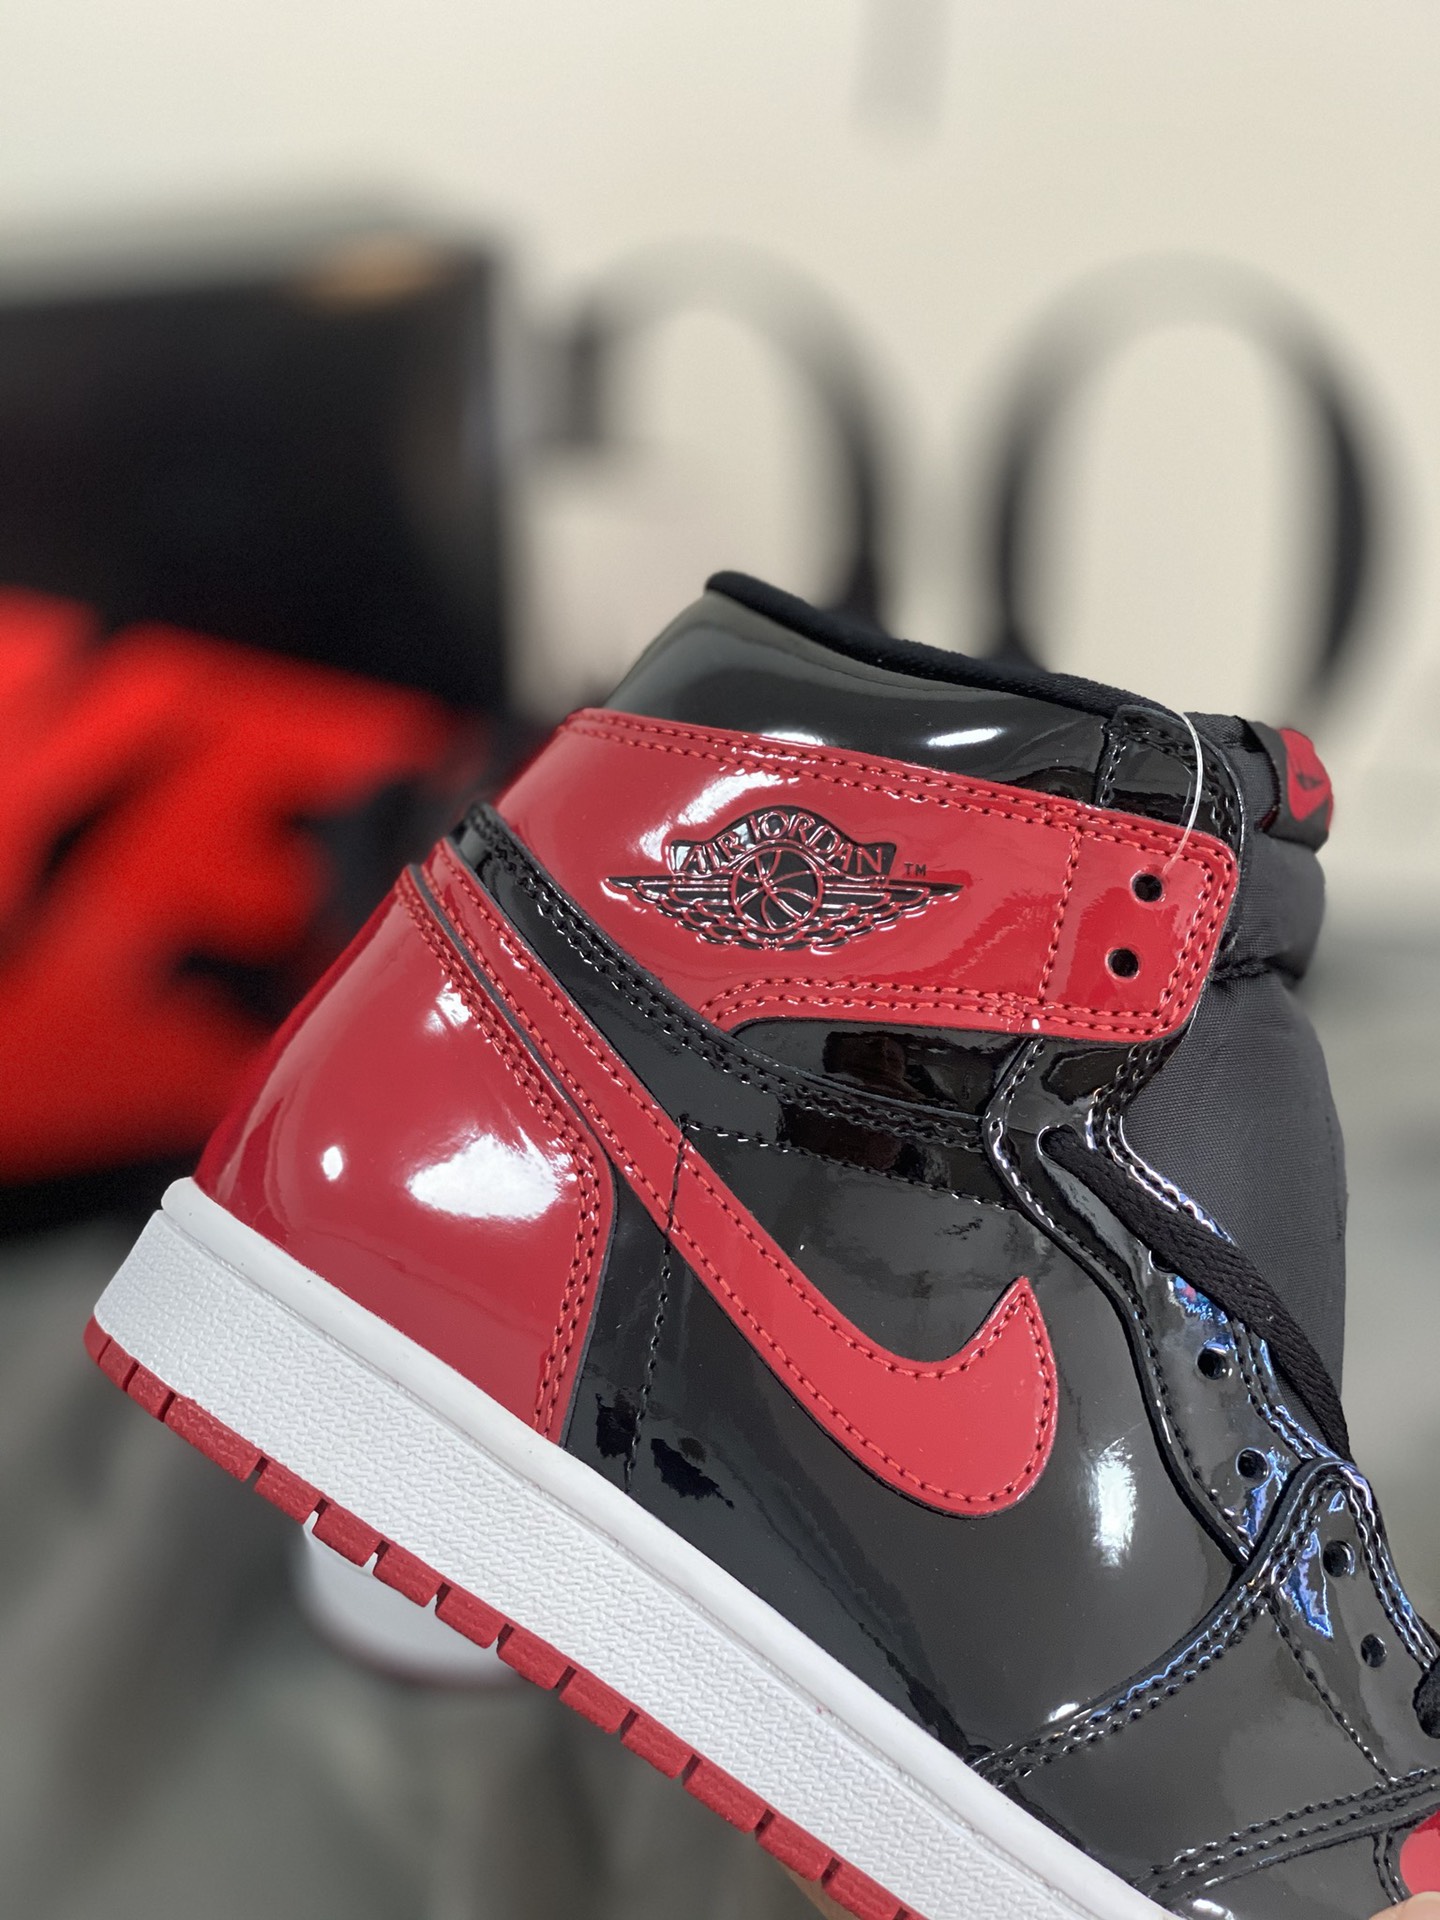 Nike Air Jordan Shoes